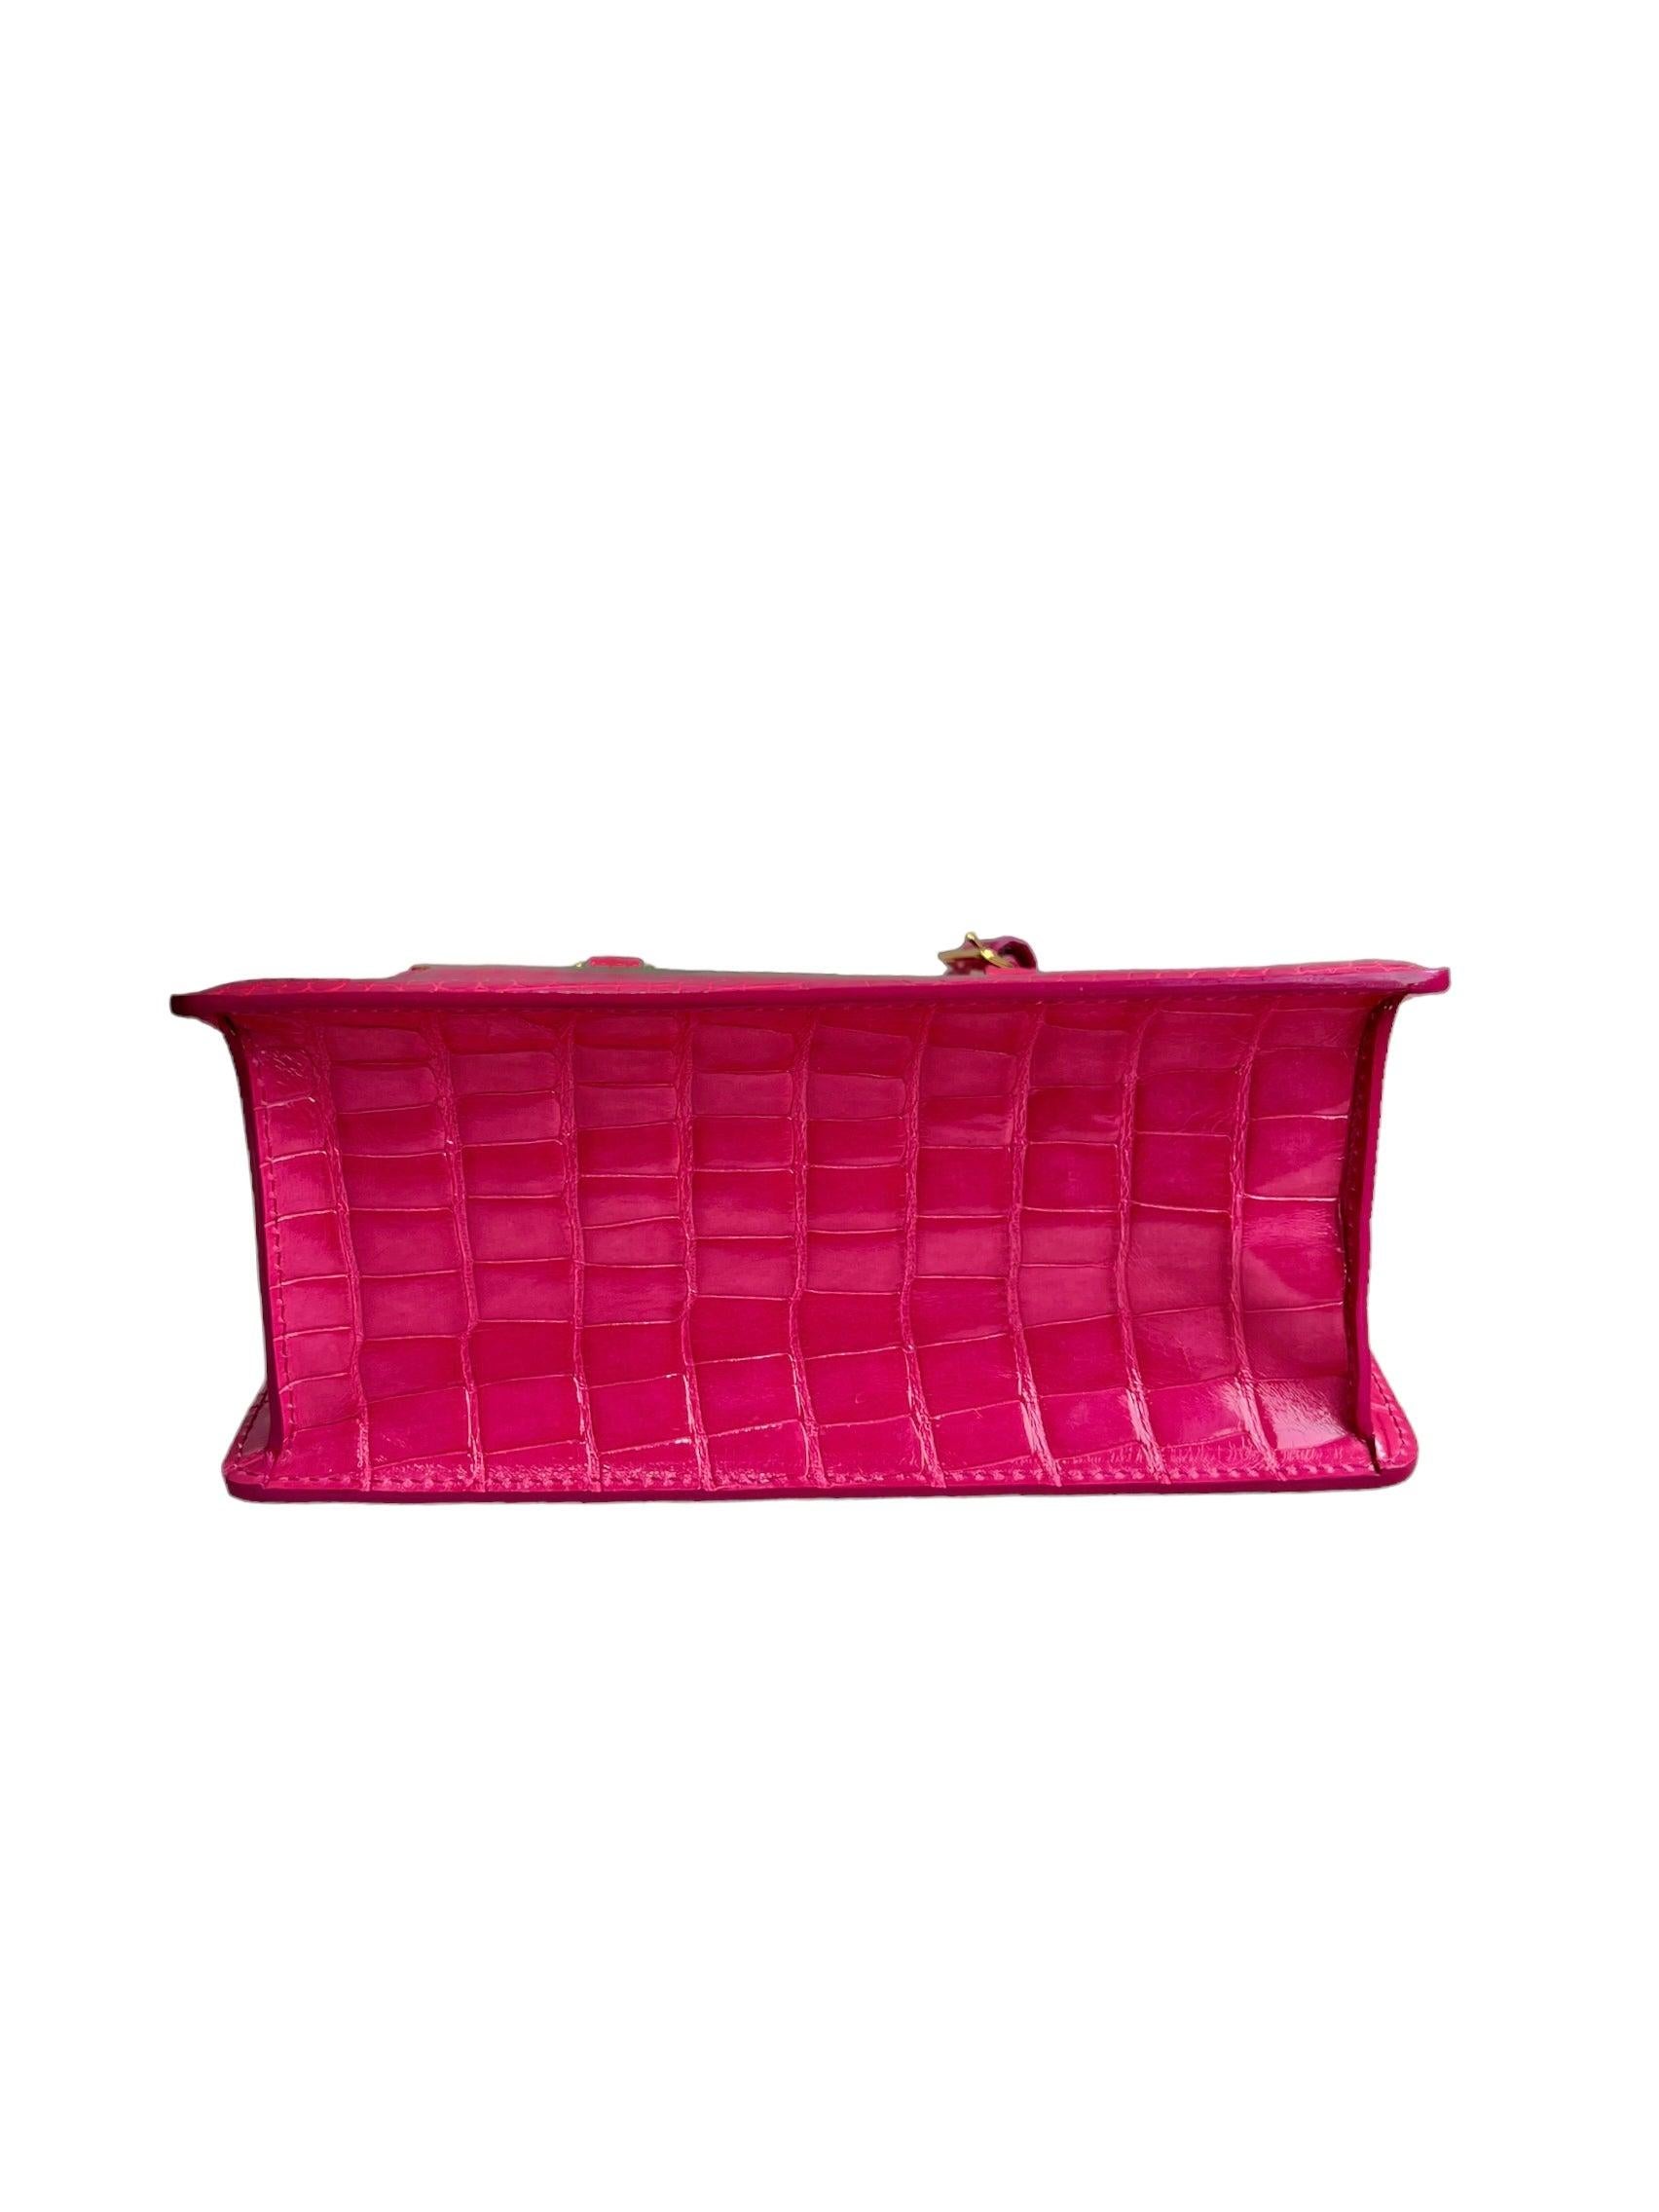 Louis Vuitton Exotic Leather Handbag  For Sale 4